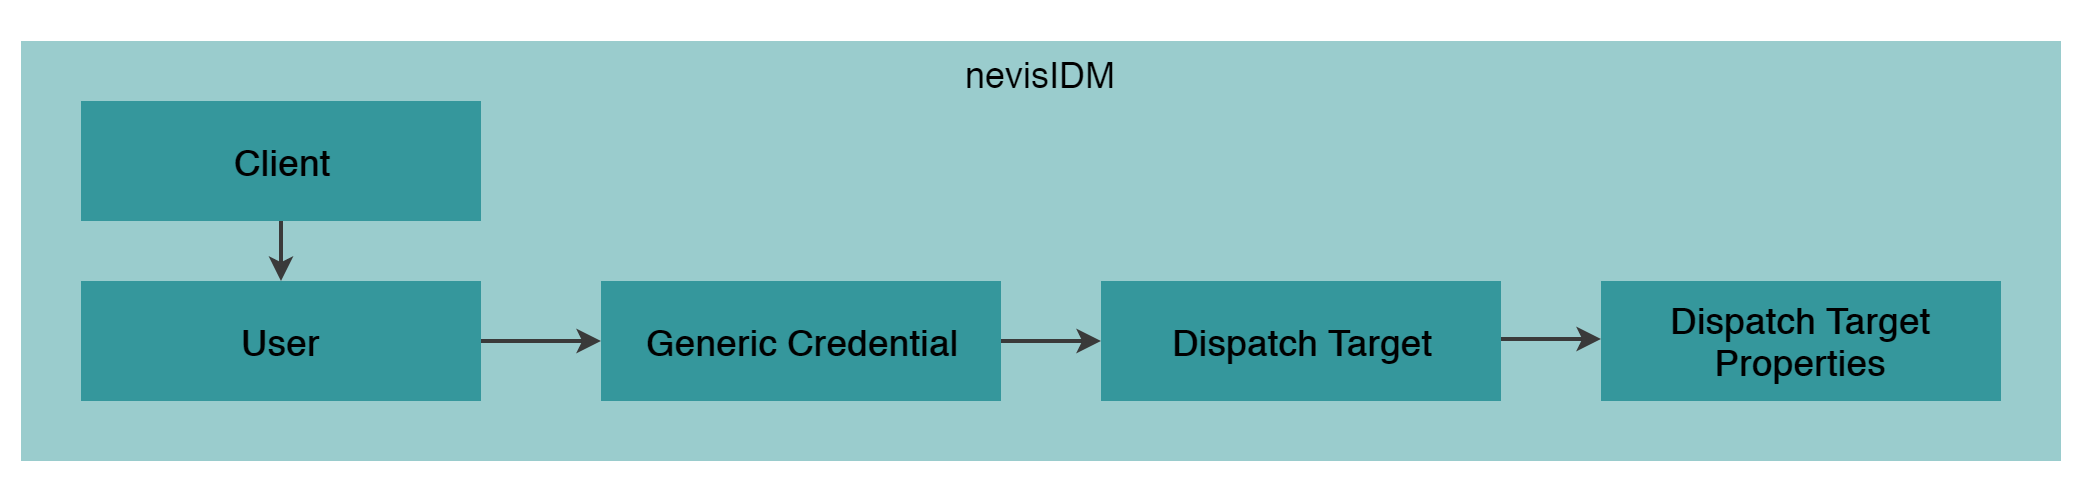 High level nevisIDM data model